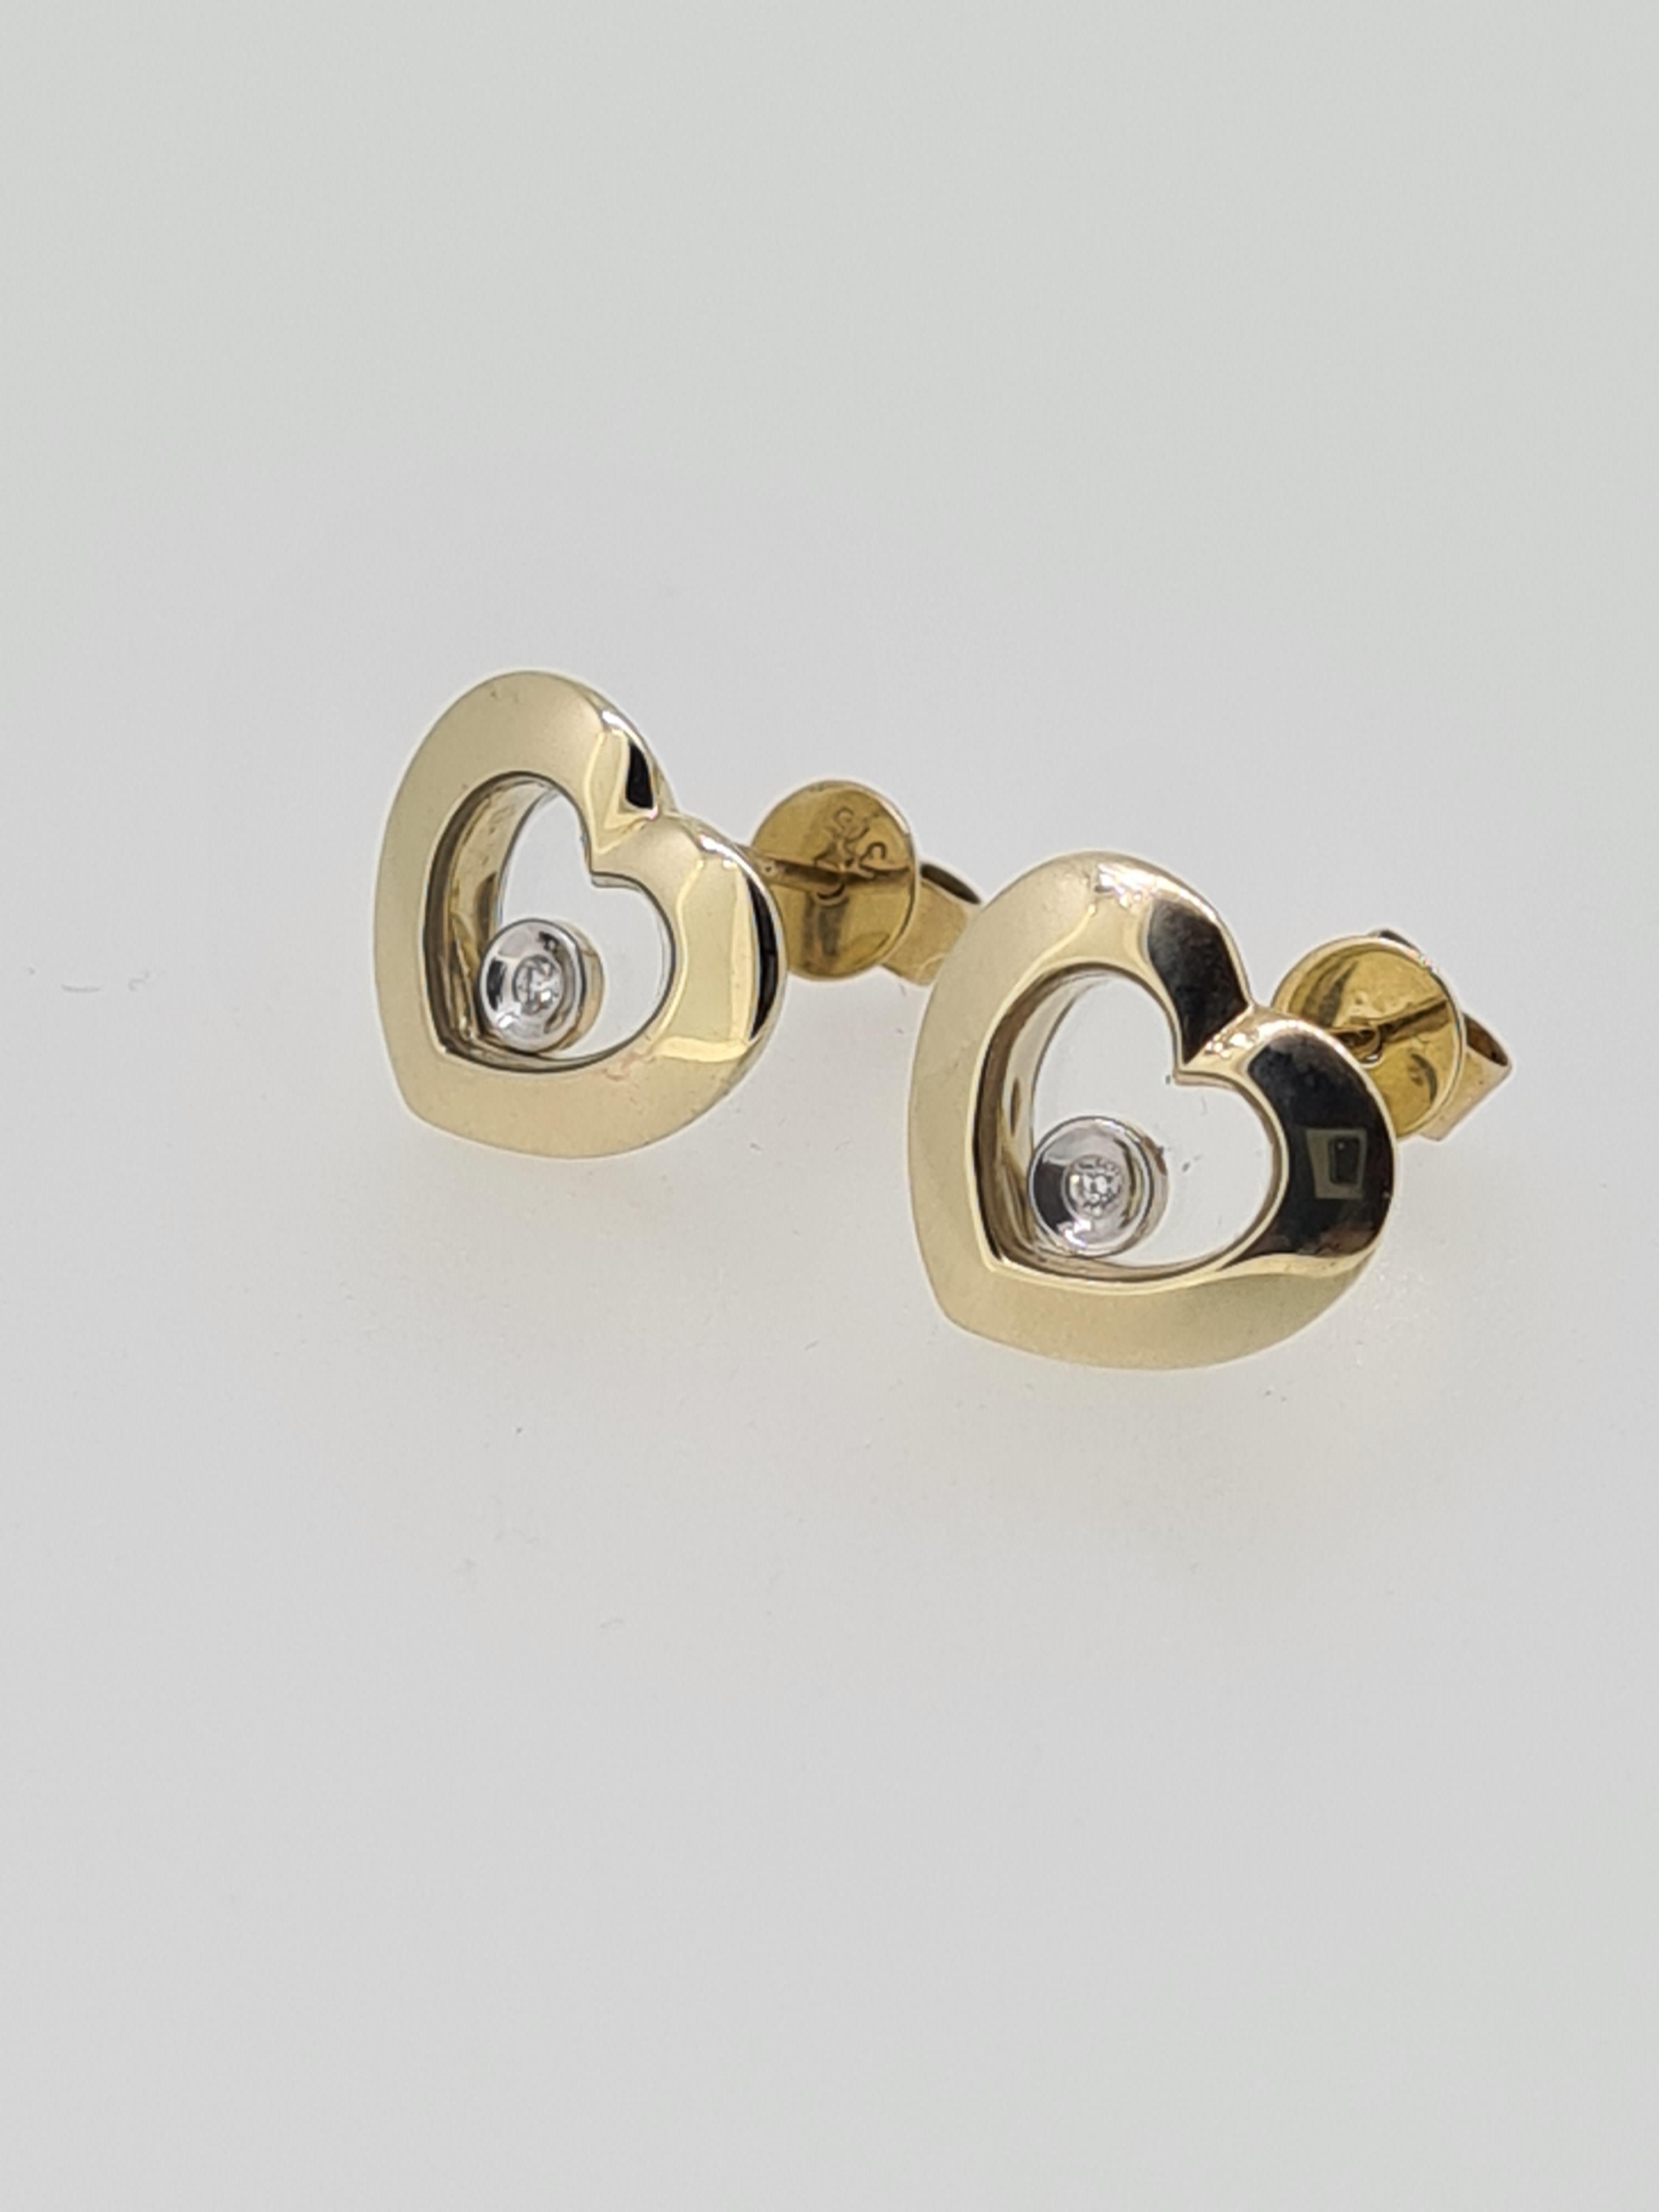 9ct yellow gold floating diamond hert stud earrings